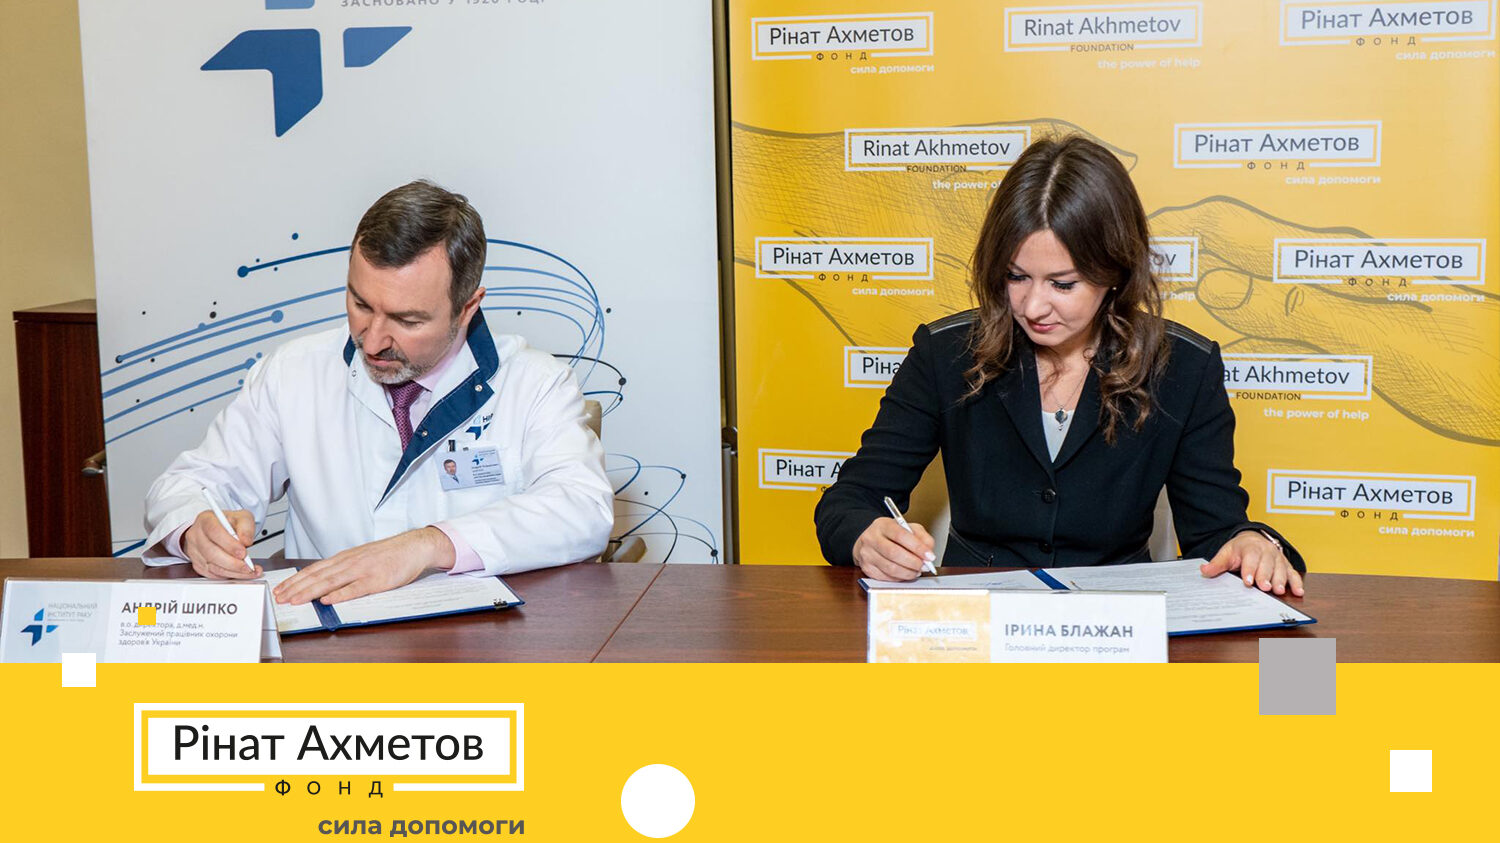 Фонд Рината Ахметова и Национальный институт рака заключили Меморандум о сотрудничестве